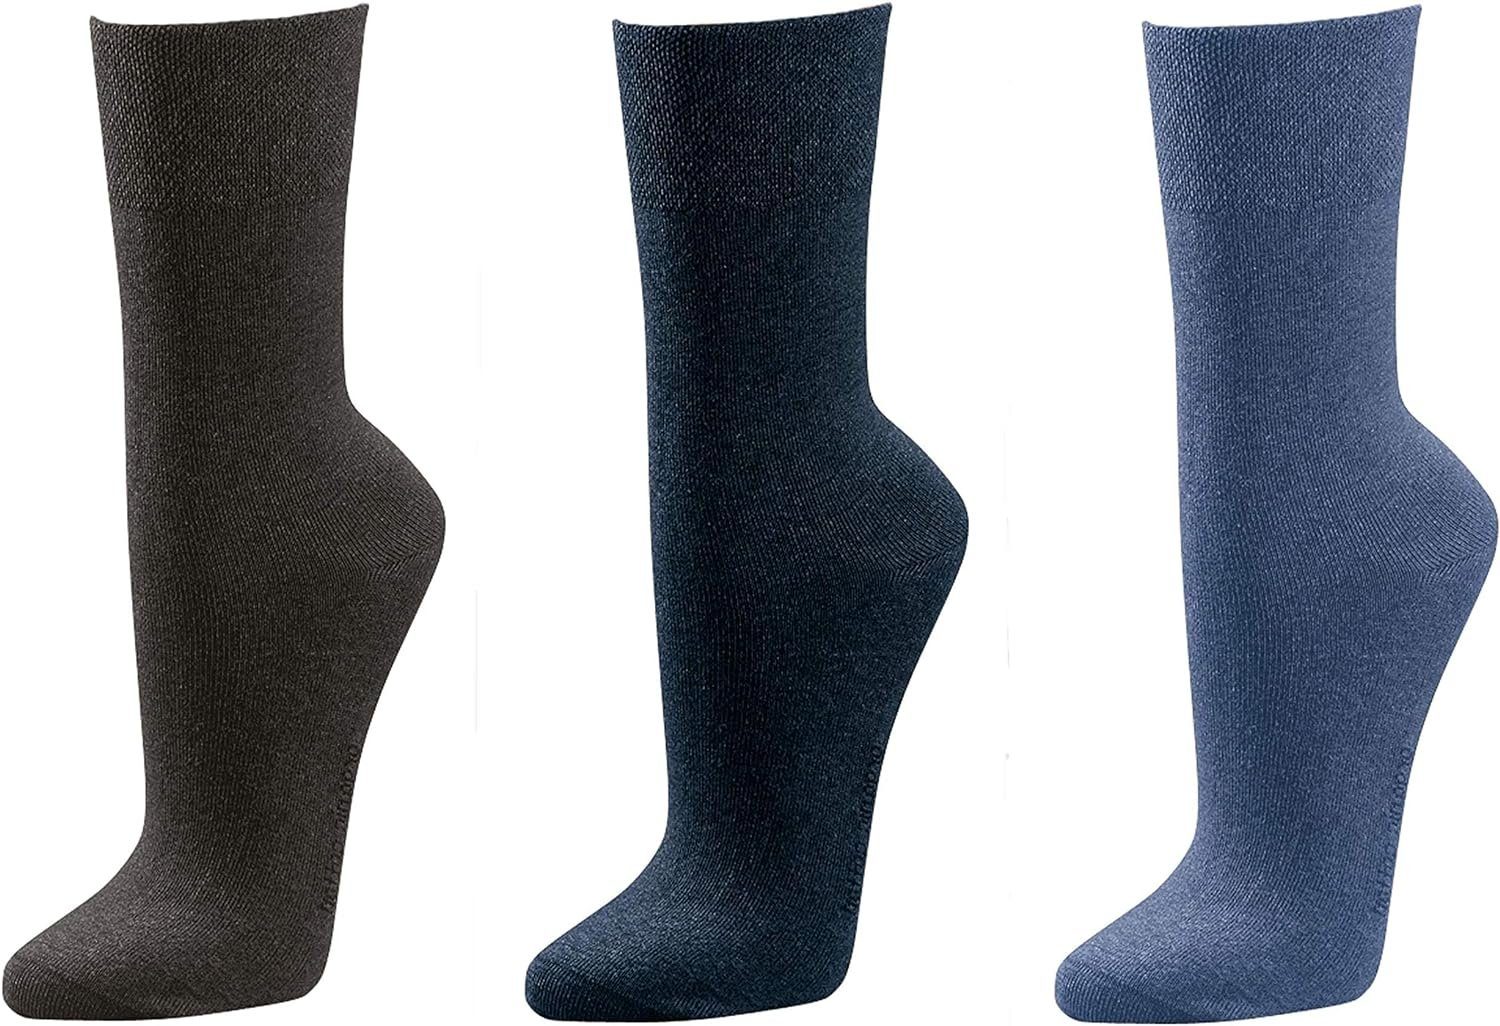 TippTexx 24 Businesssocken 3 Paar Socken GROßE GRÖßEN für GROßE Männer mit Antiloch-Garantie Schwarz/Marine/Jeans